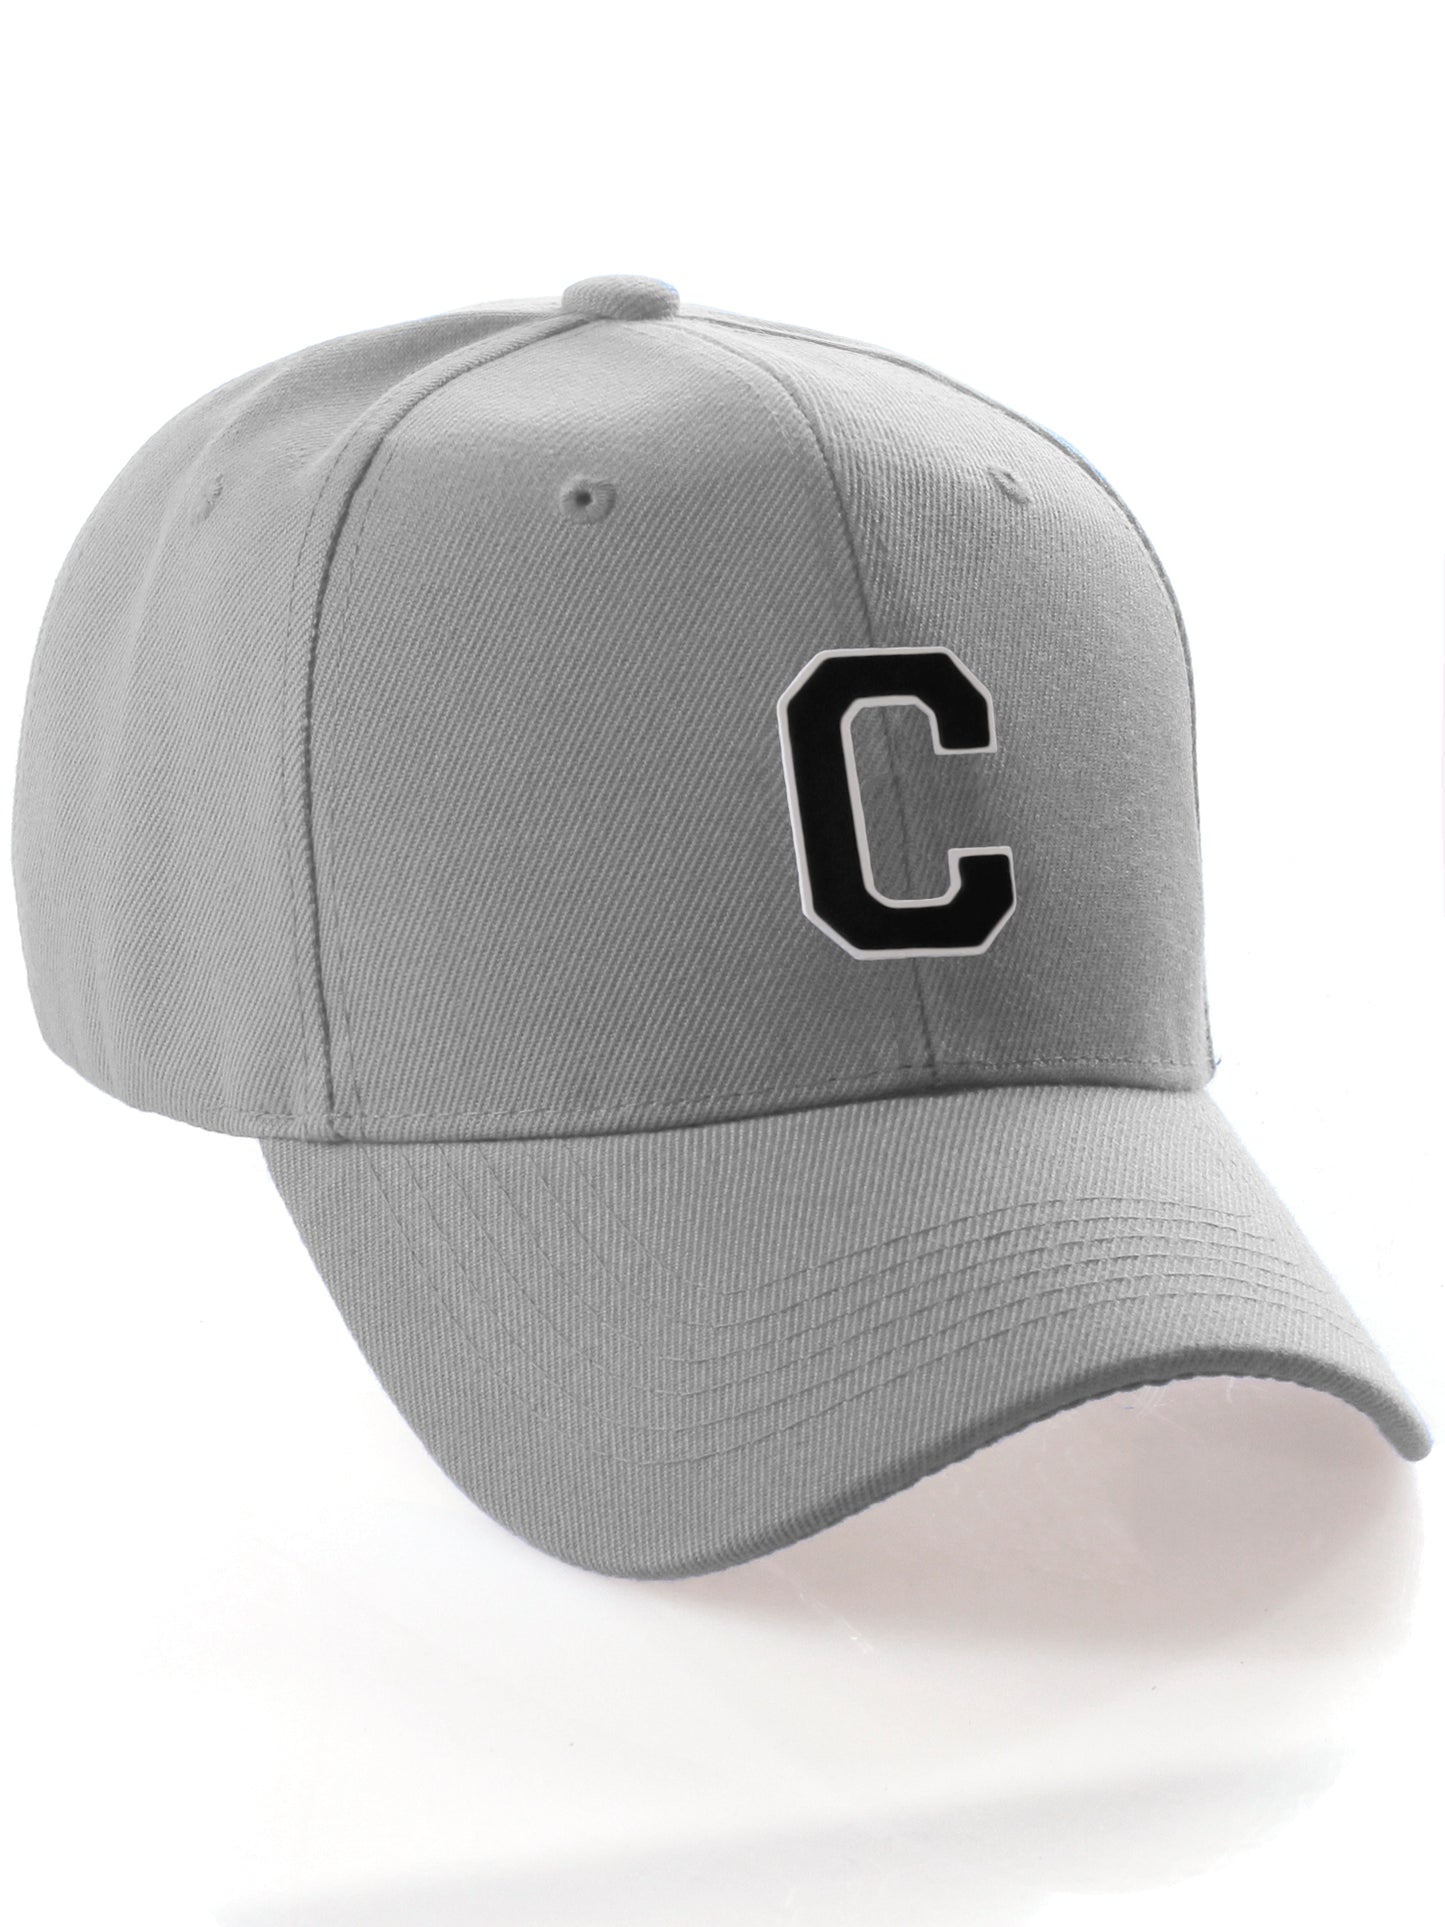 Classic Baseball Hat Custom A to Z Initial Team Letter, Lt Gray Cap White Black